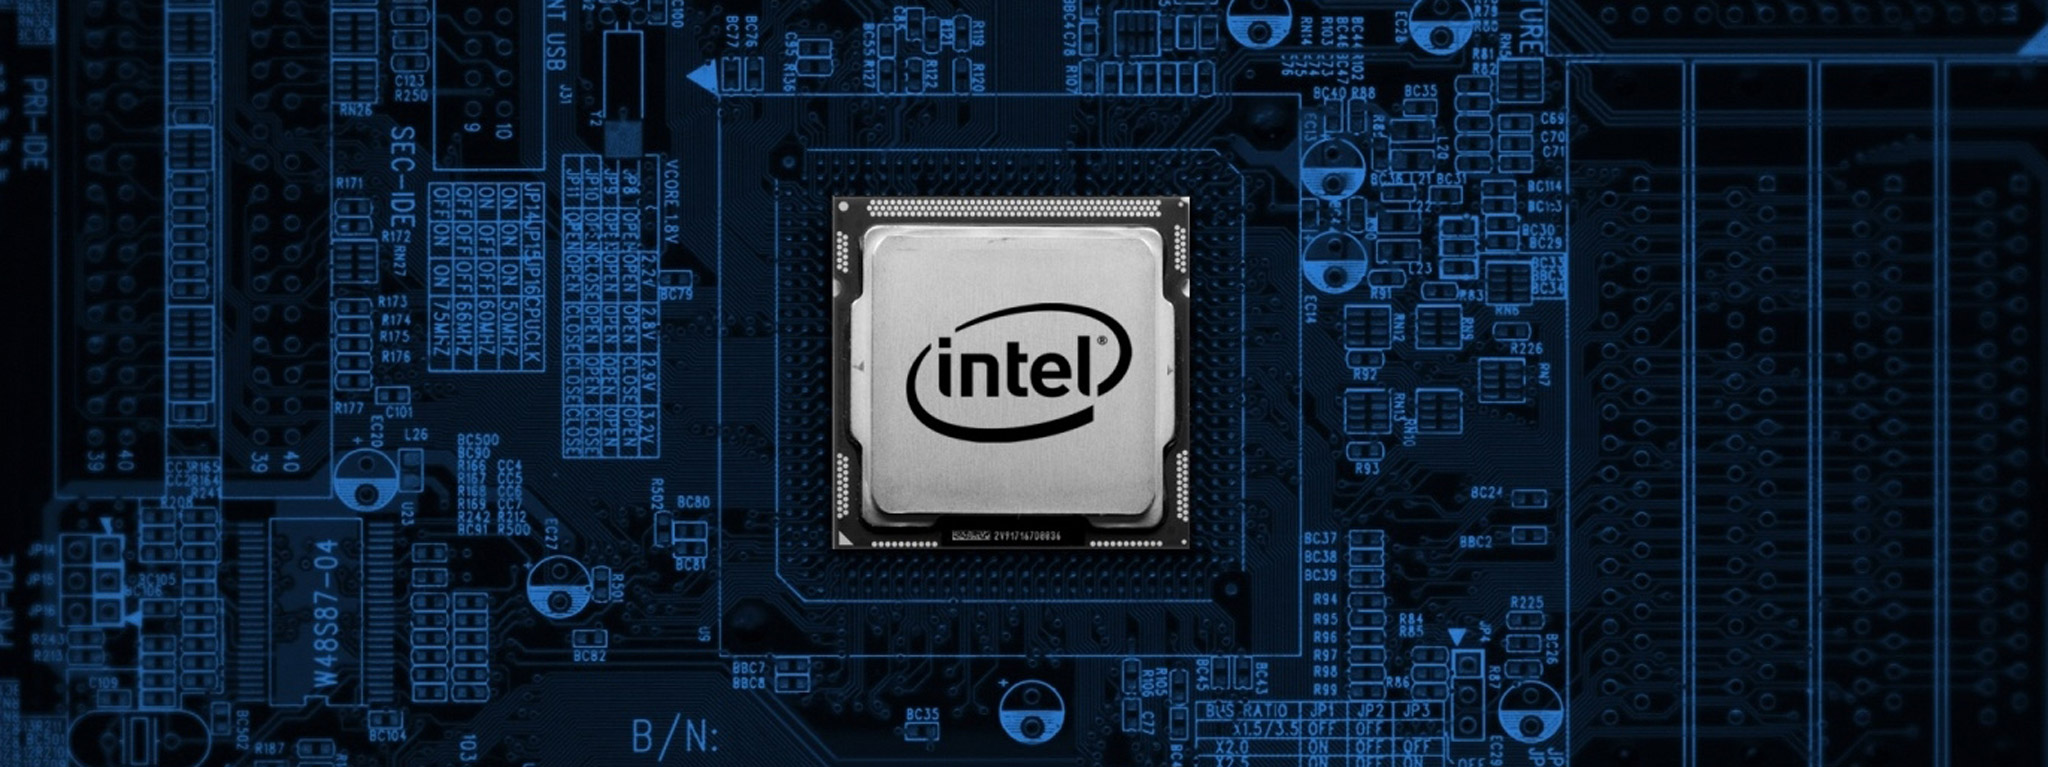 CPU Intel Core i7-9700F (3.0GHz turbo up to 4.7Ghz, 8 nhân 8 luồng, 12MB Cache, 65W) - Socket Intel